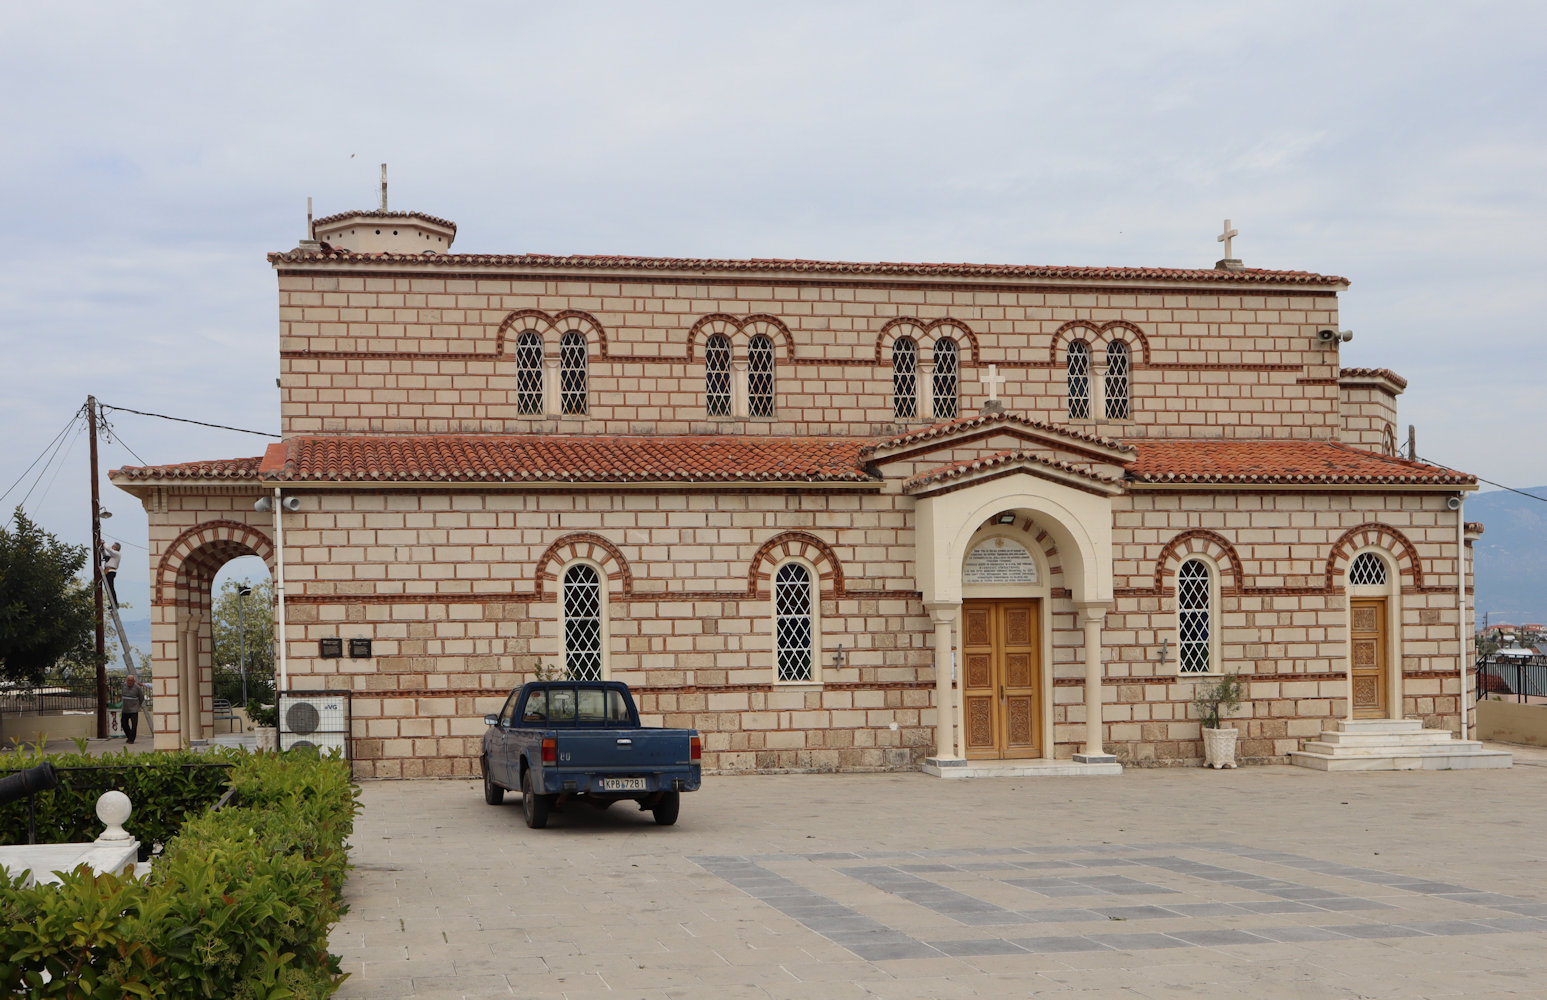 Die Pfarrkirche des heute Alt-Korinth genannten Ortes, der größtenteils nach dem Erdbeben 1858 in die am Meer neu gegründete Stadt verlegt wurde, wo sich seitdem auch die Metropolitankirche befindet